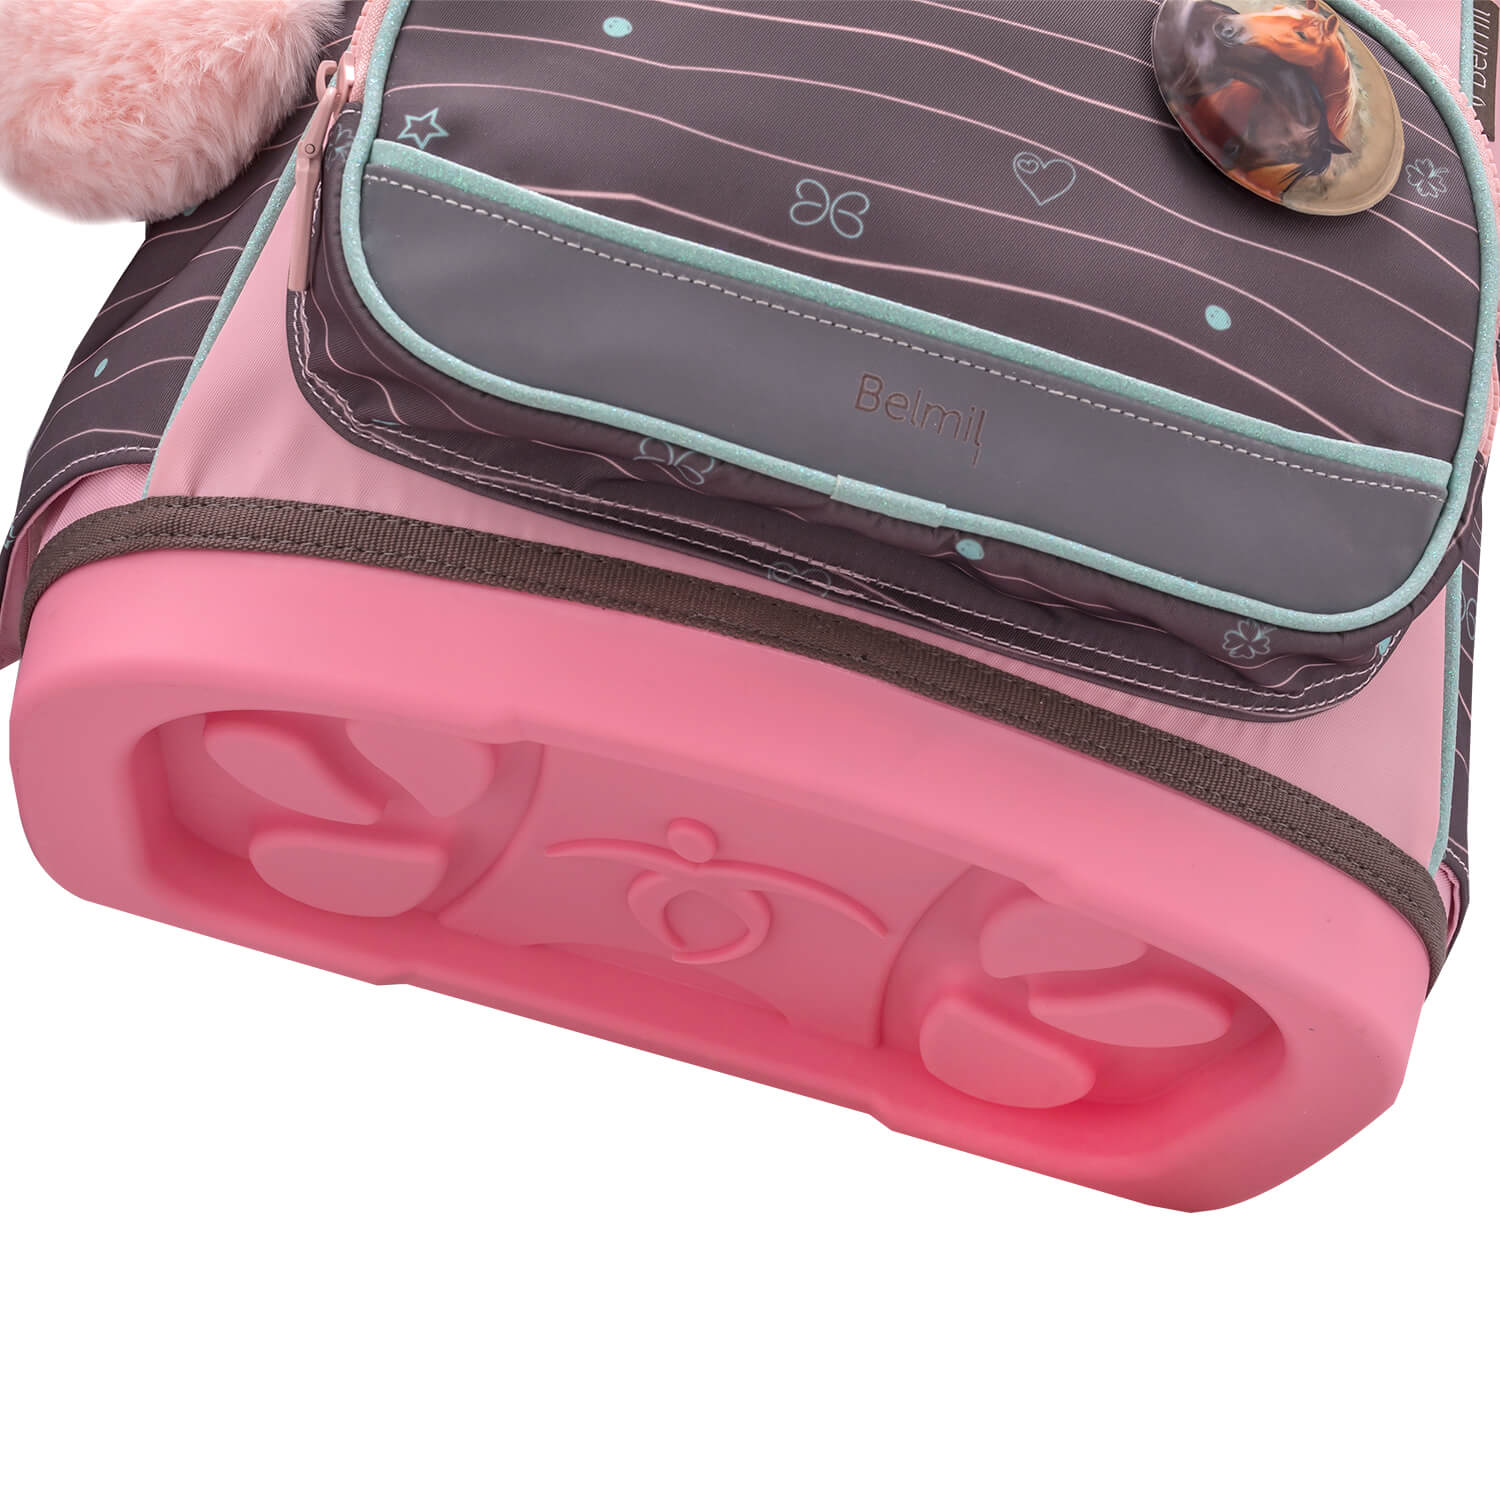 Premium Compact Plus Mint Schoolbag set 5pcs.